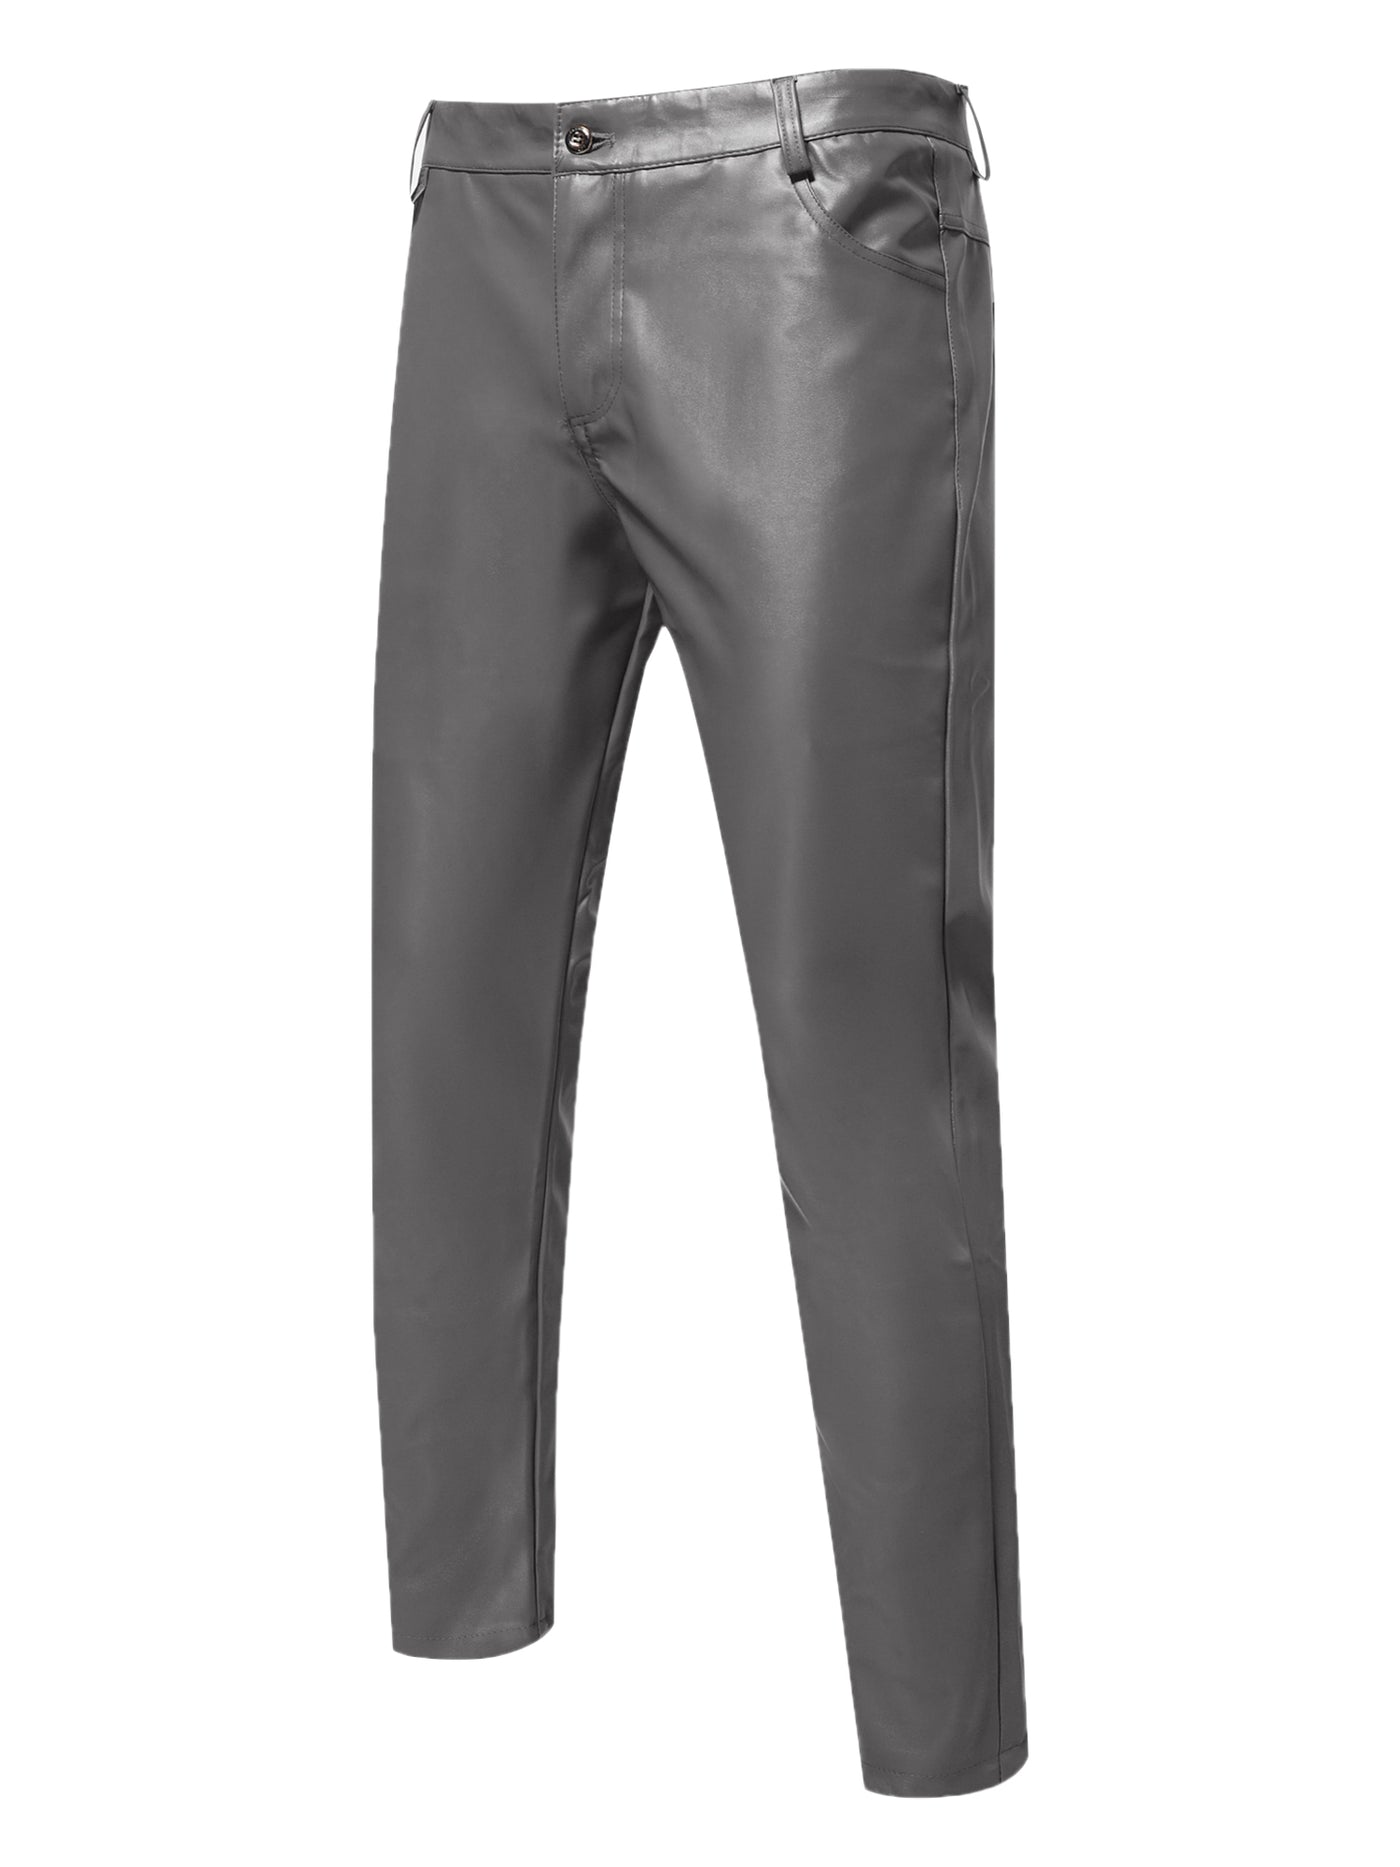 Bublédon Faux Leather Pants for Men's Slim Fit Hip Hop Nightclub Disco Party Trousers